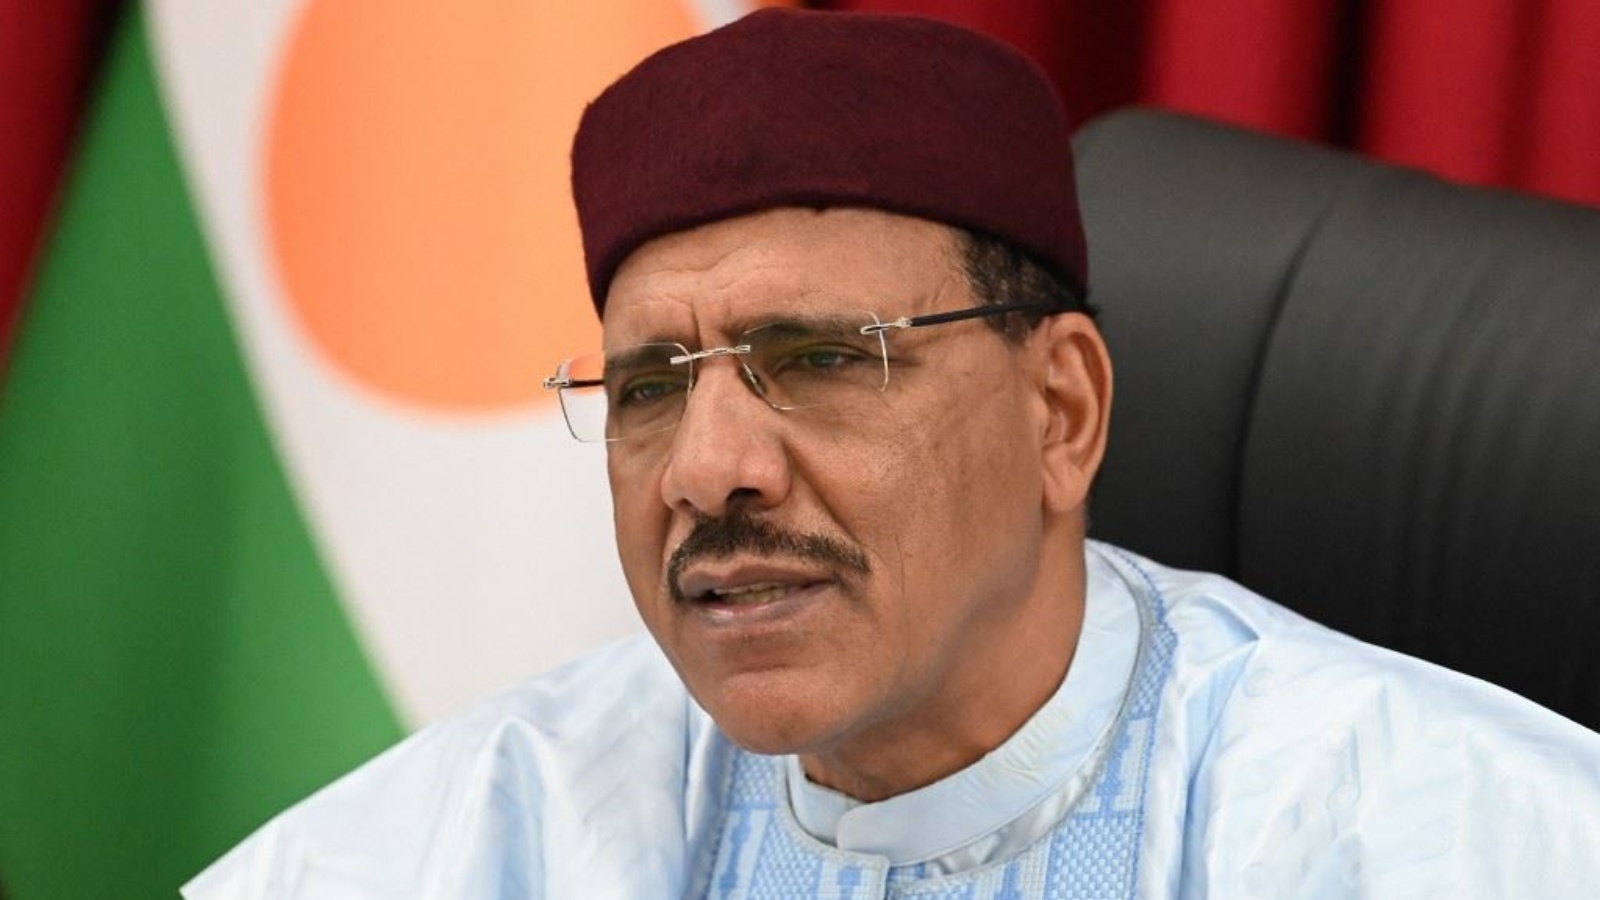 رئيس النيجر المحتجز محمد بازوم